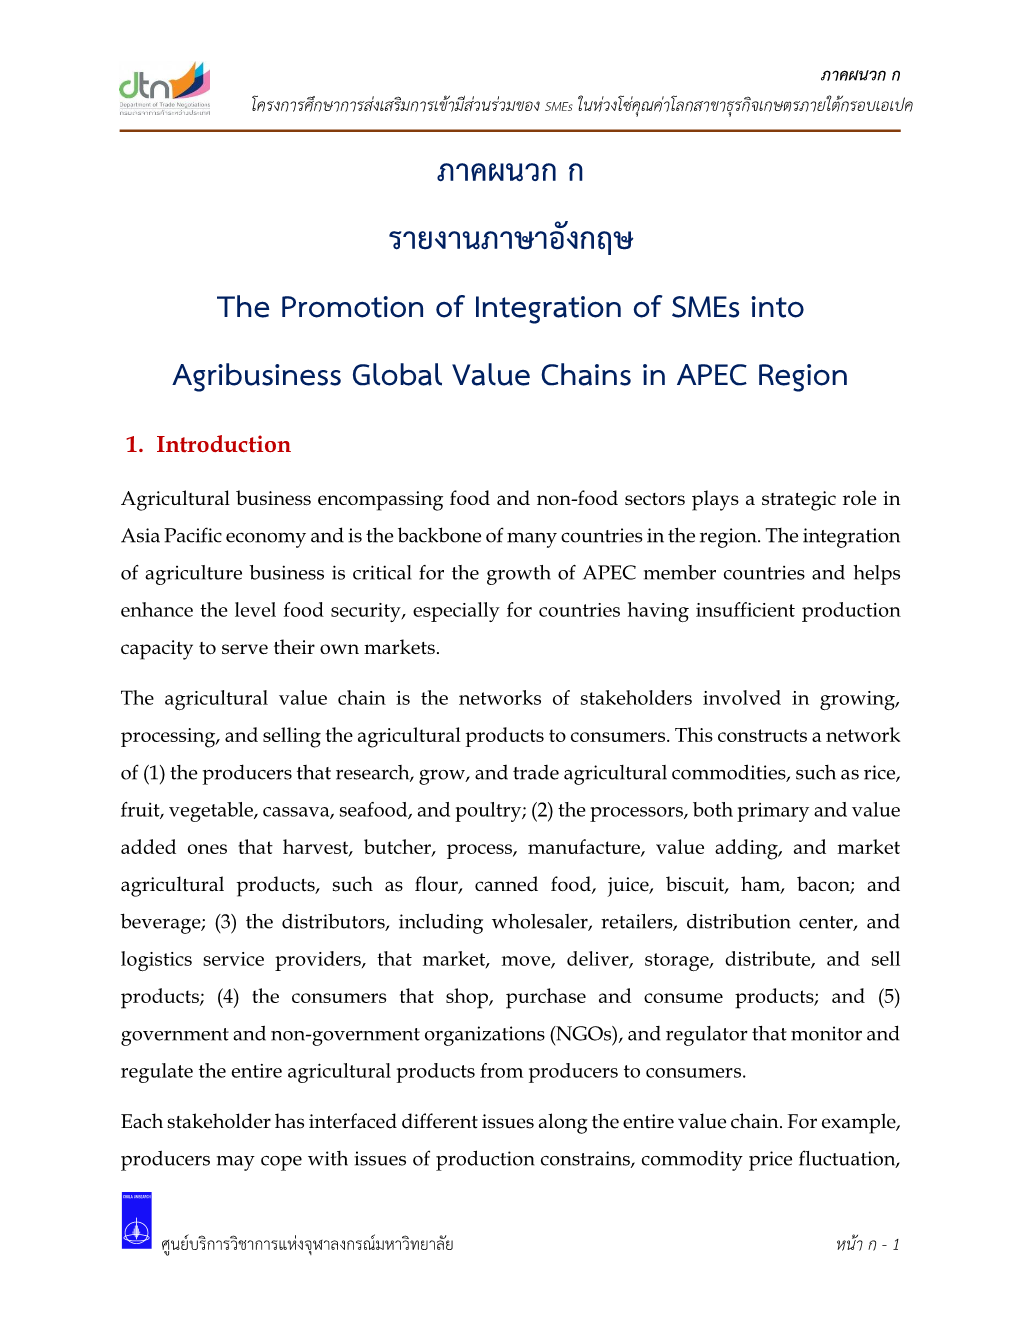 ภาคผนวก ก รายงานภาษาอังกฤษ the Promotion of Integration of Smes Into Agribusiness Global Value Chains in APEC Region